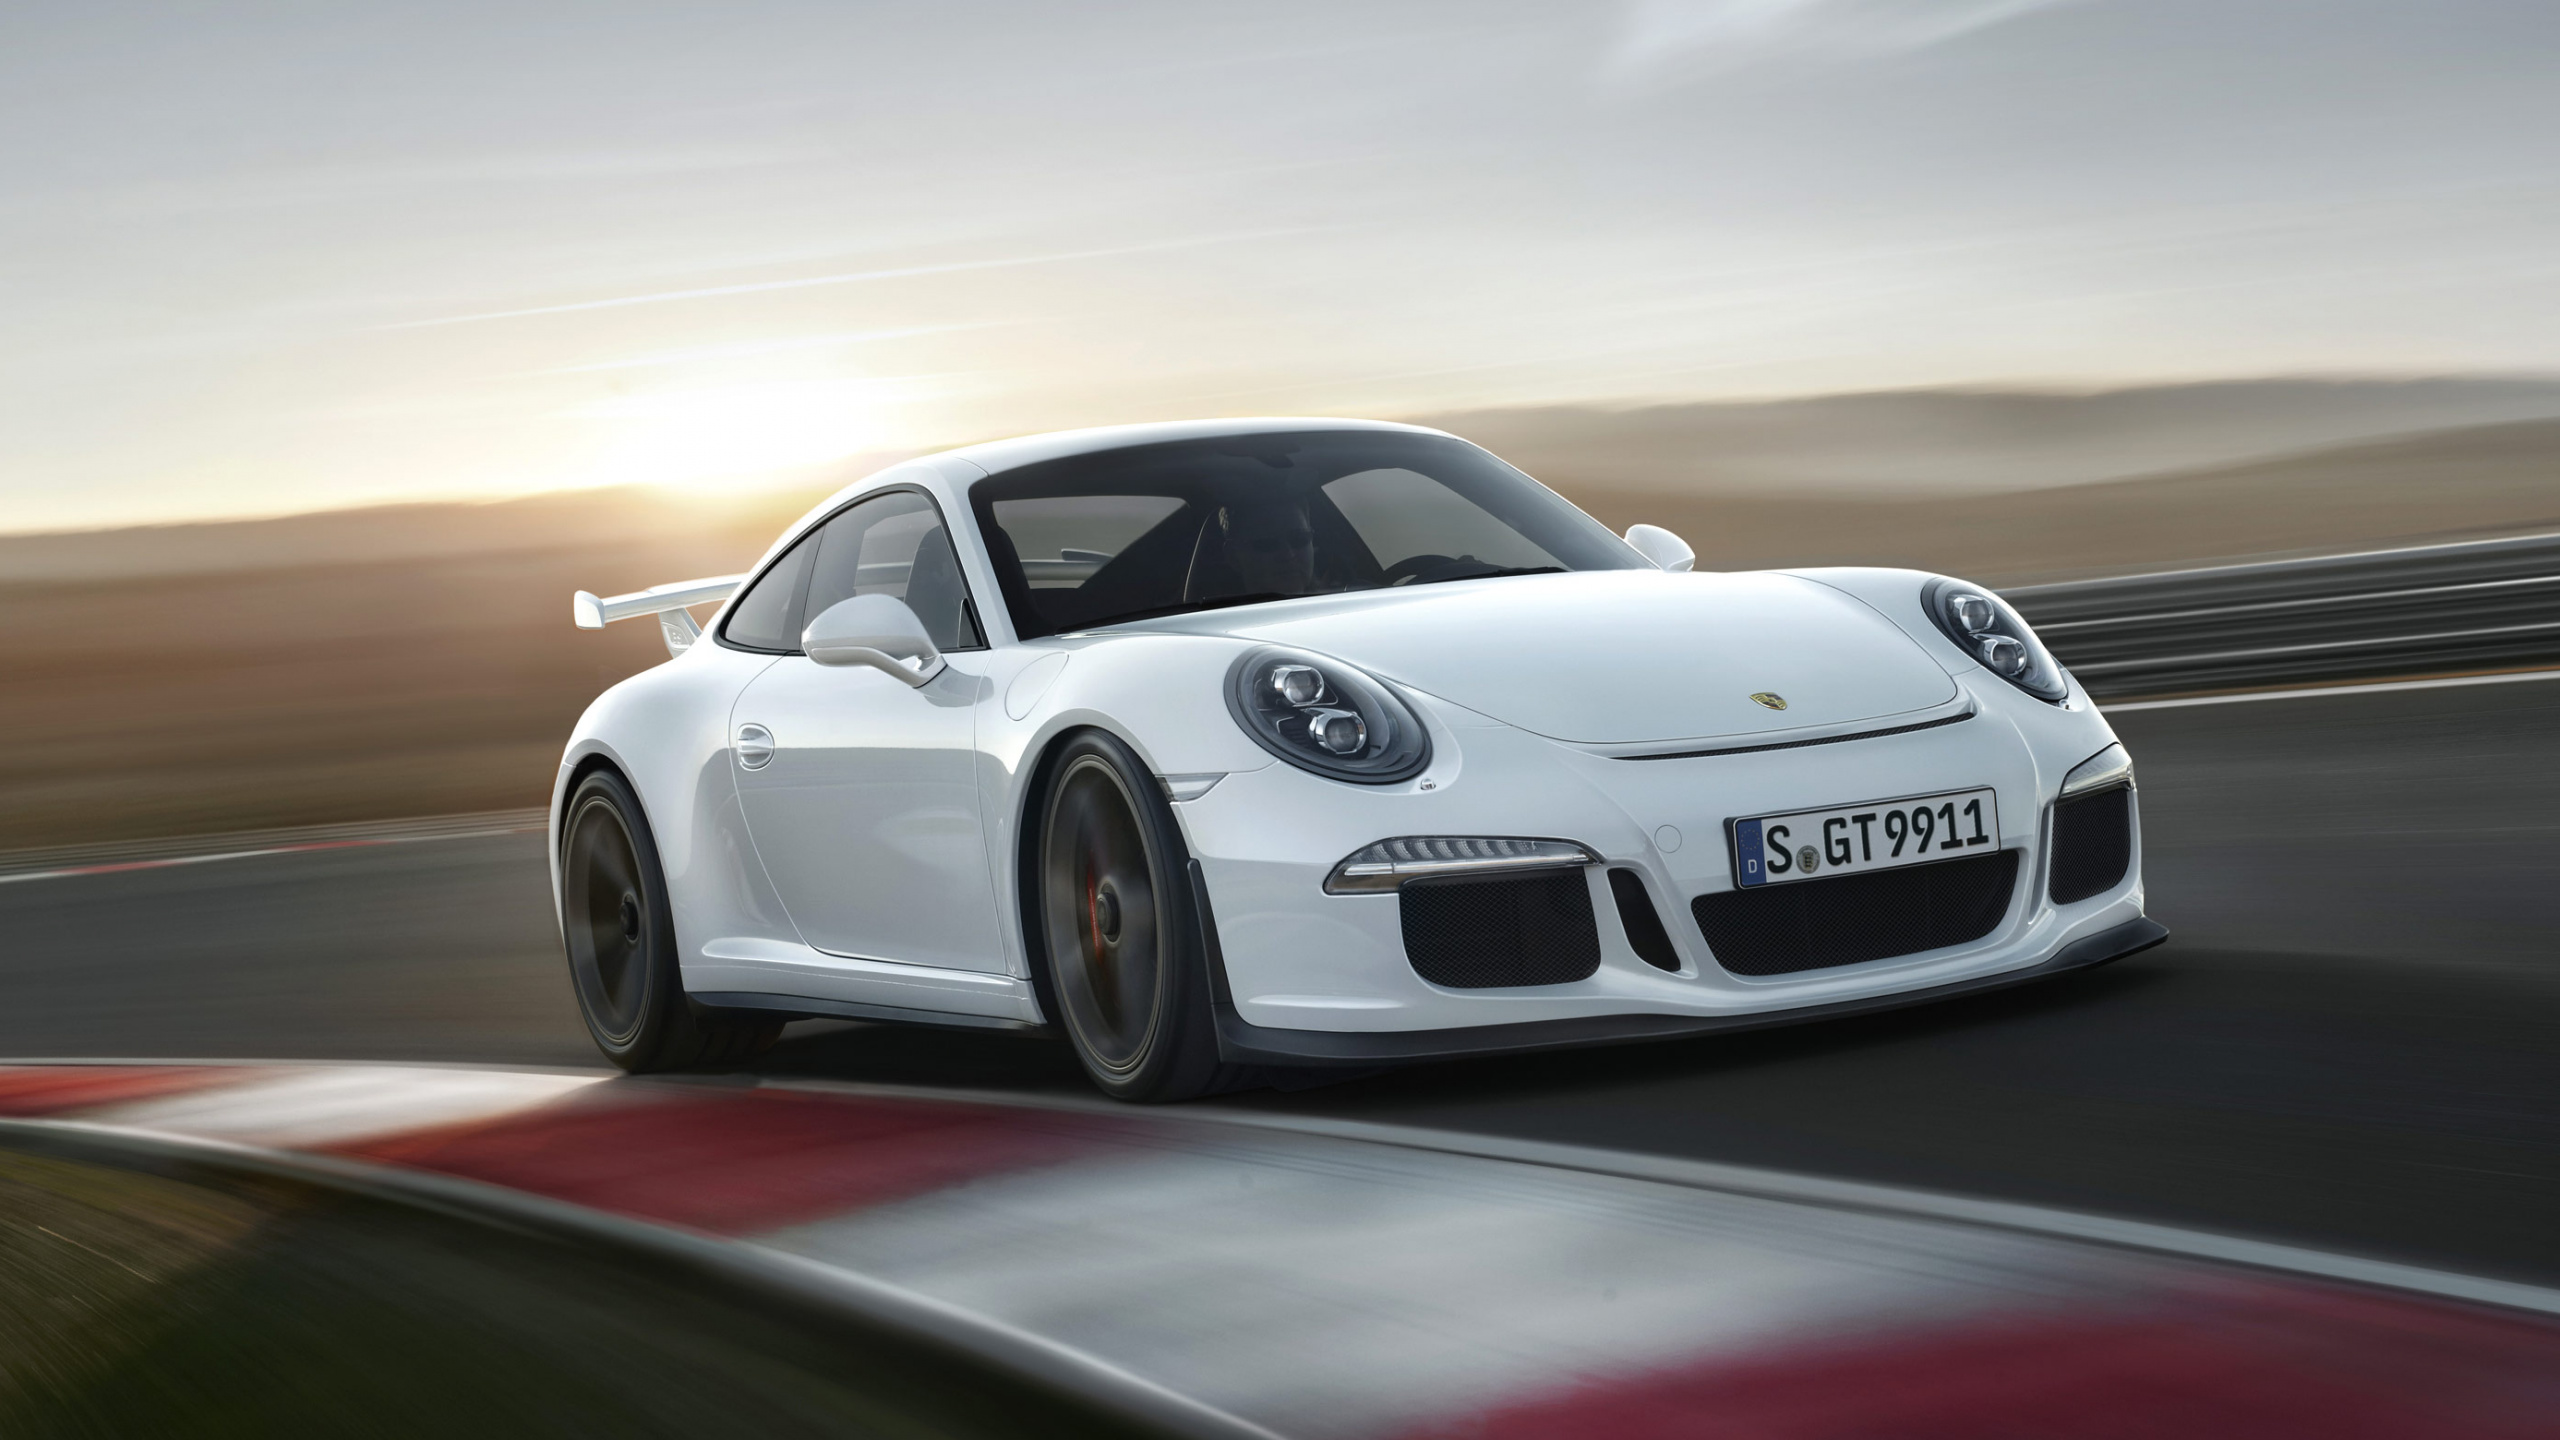 Weißer Porsche 911 Unterwegs. Wallpaper in 2560x1440 Resolution